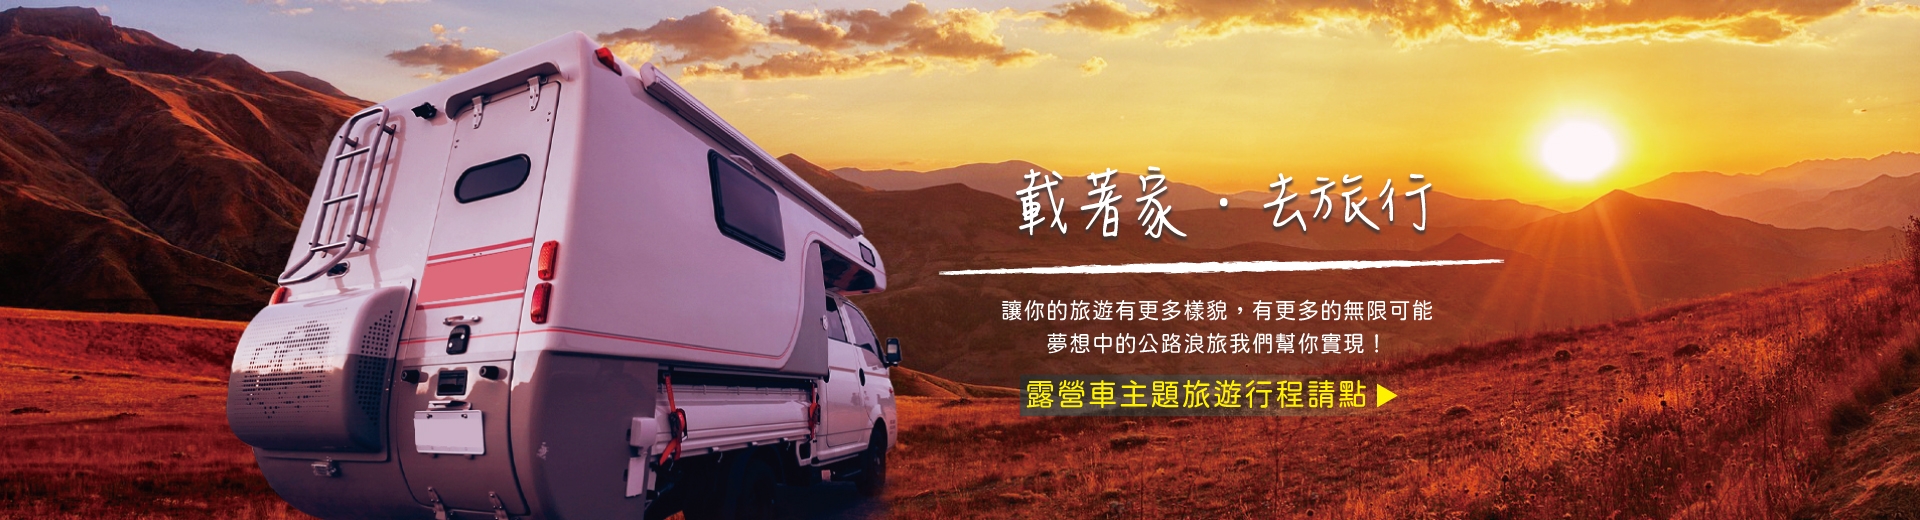 鈦美旅行社-台灣、露營車旅遊推薦